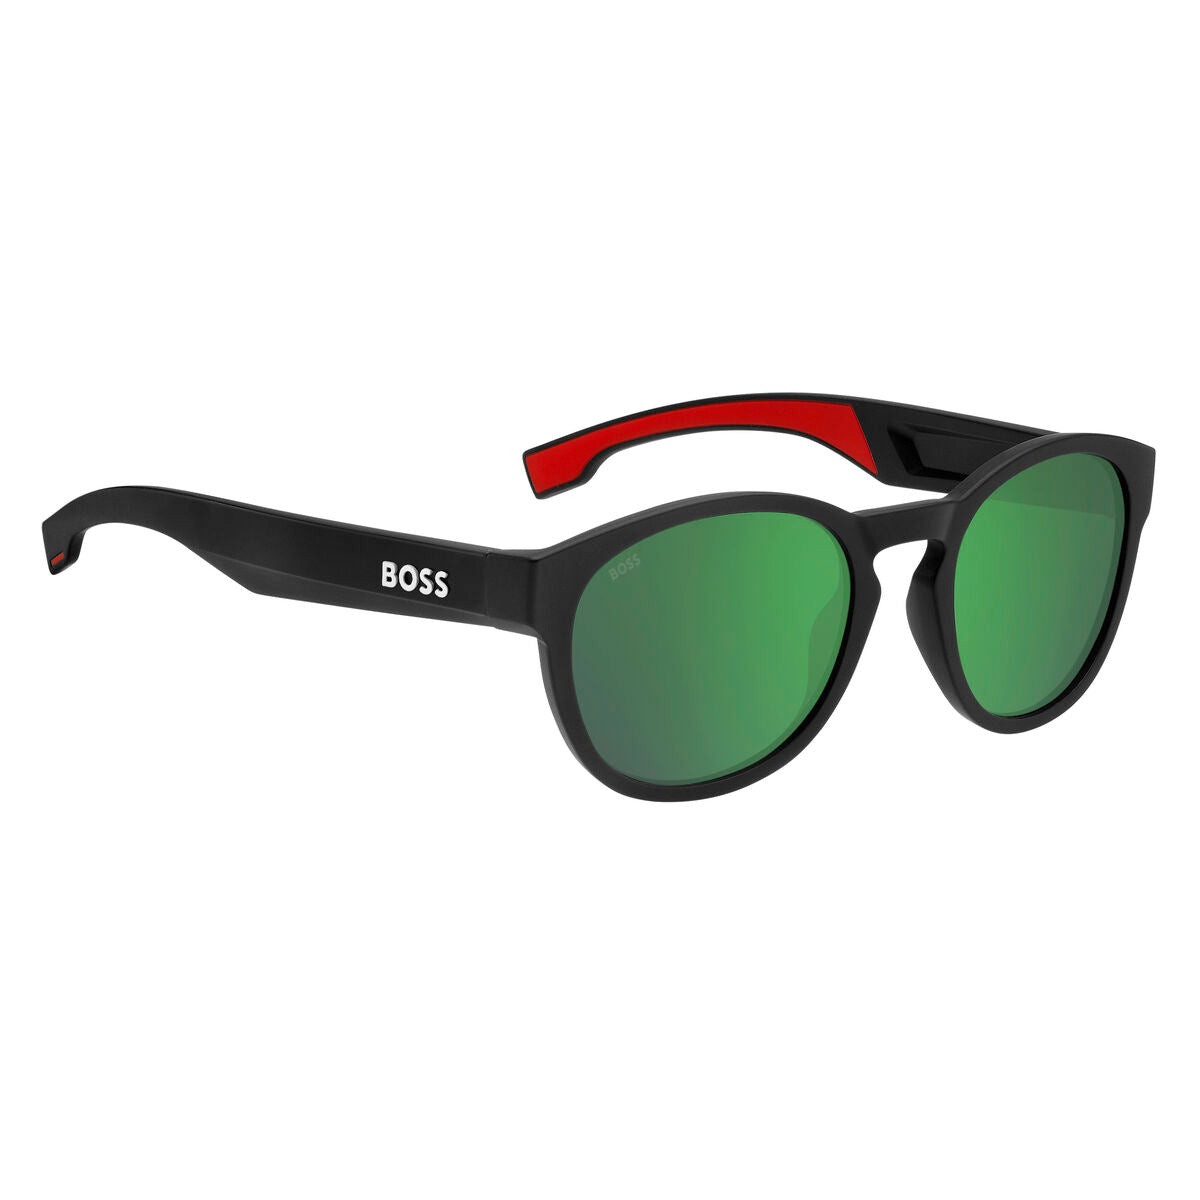 Kaufe Herrensonnenbrille Hugo Boss BOSS-1452-S-BLX-Z9 bei AWK Flagship um € 90.00